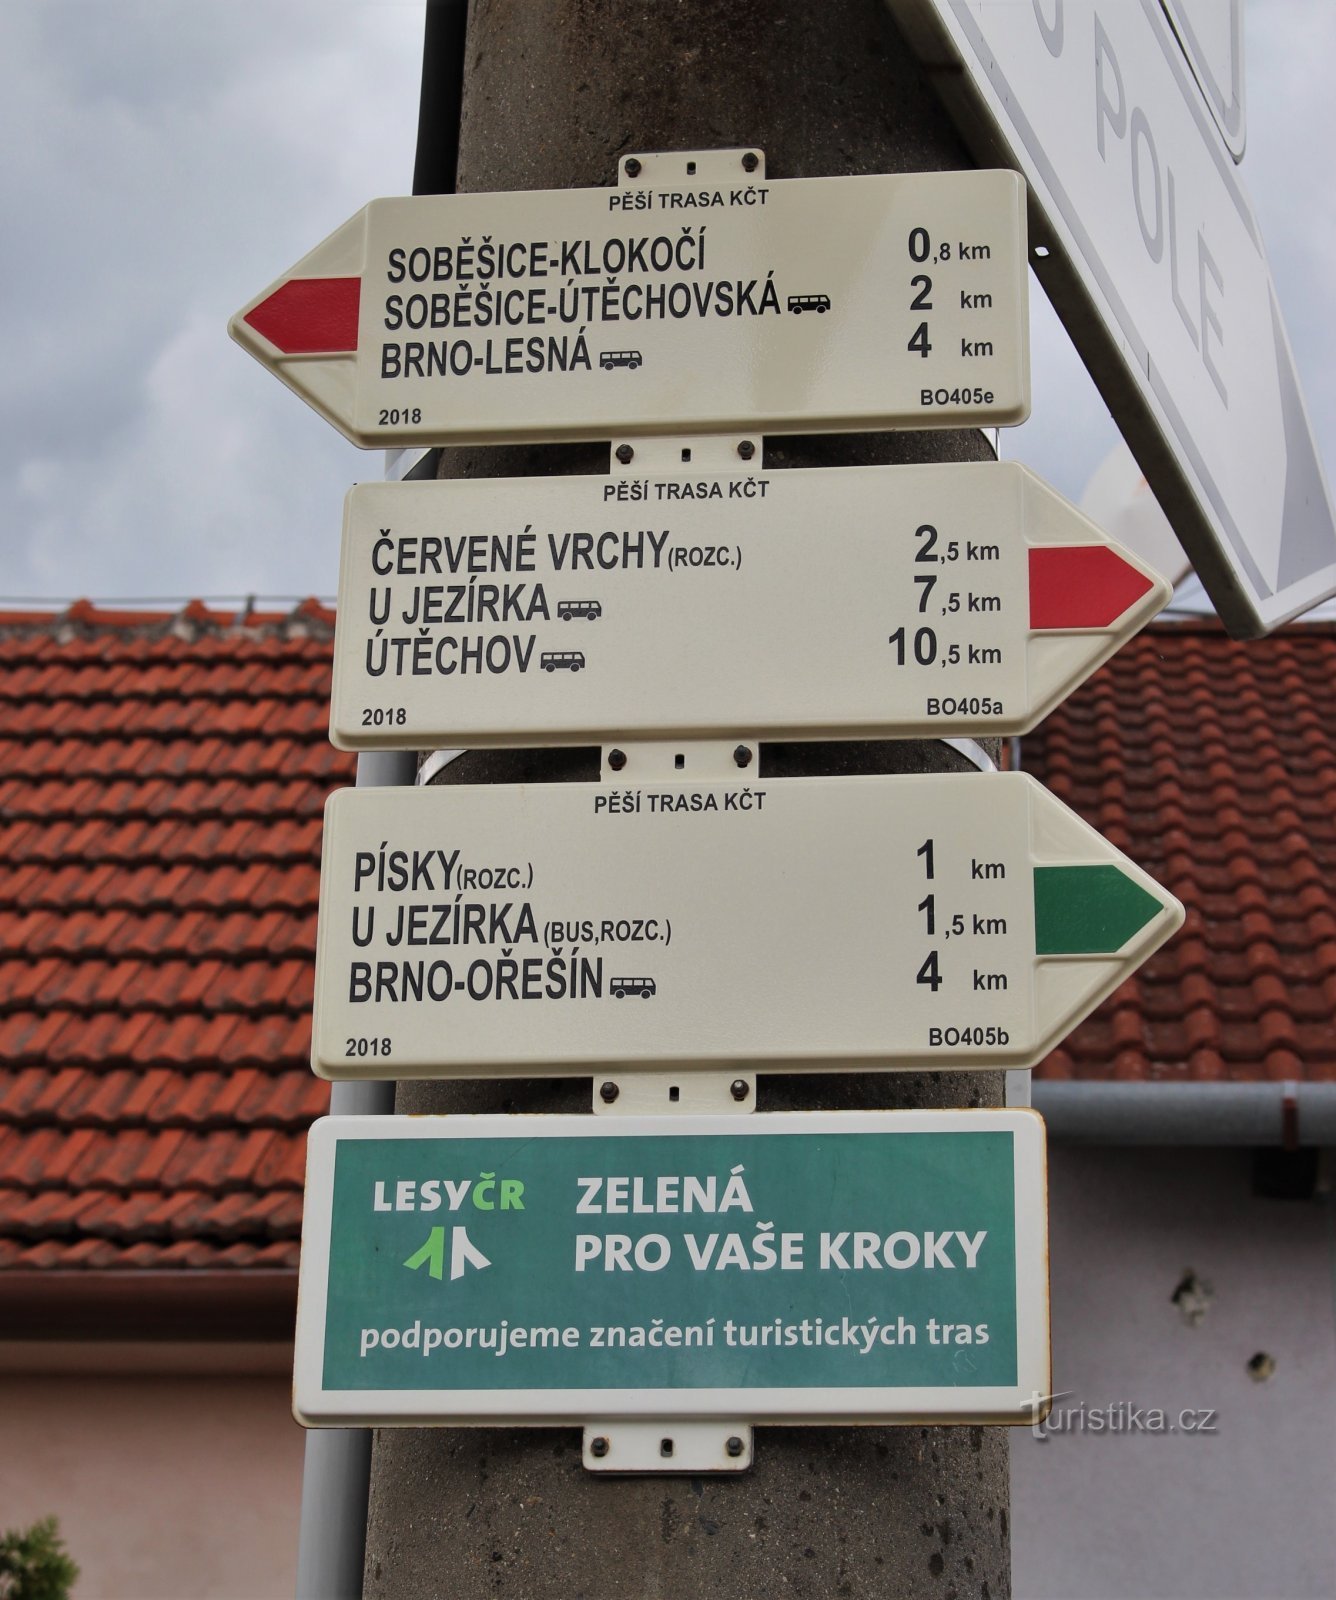 Răscruce turistică Soběšice-Klarisky